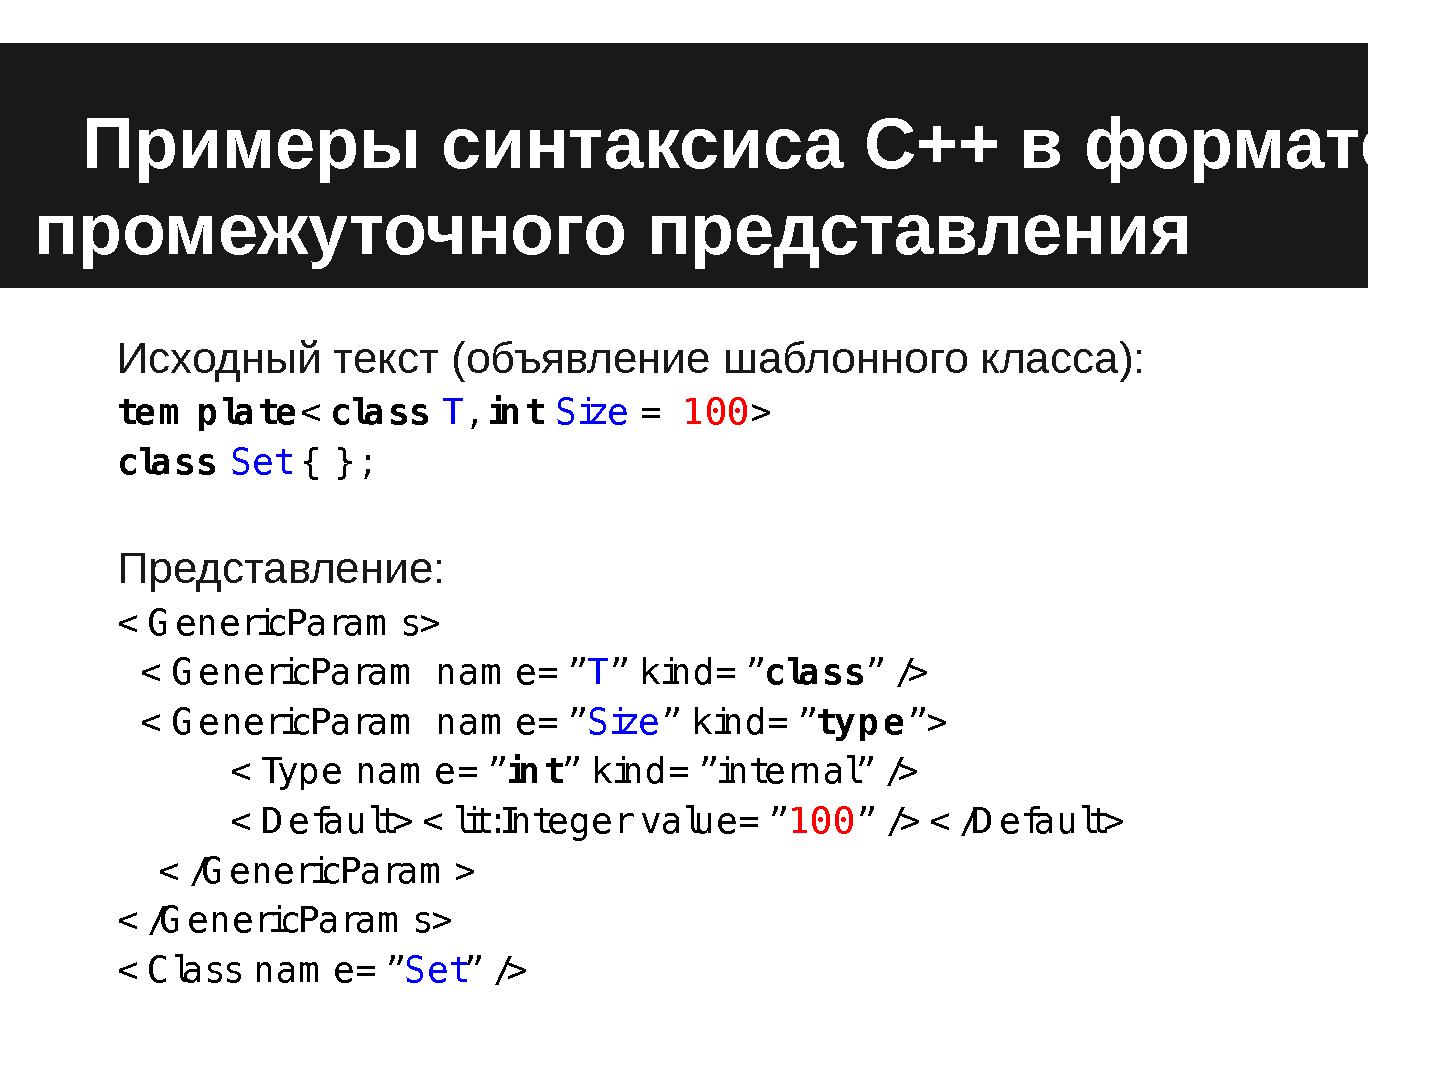 Файл:Проект технологии извлечения знаний из исходных текстов на языках С++ и Csharp с использованием общего представления.pdf